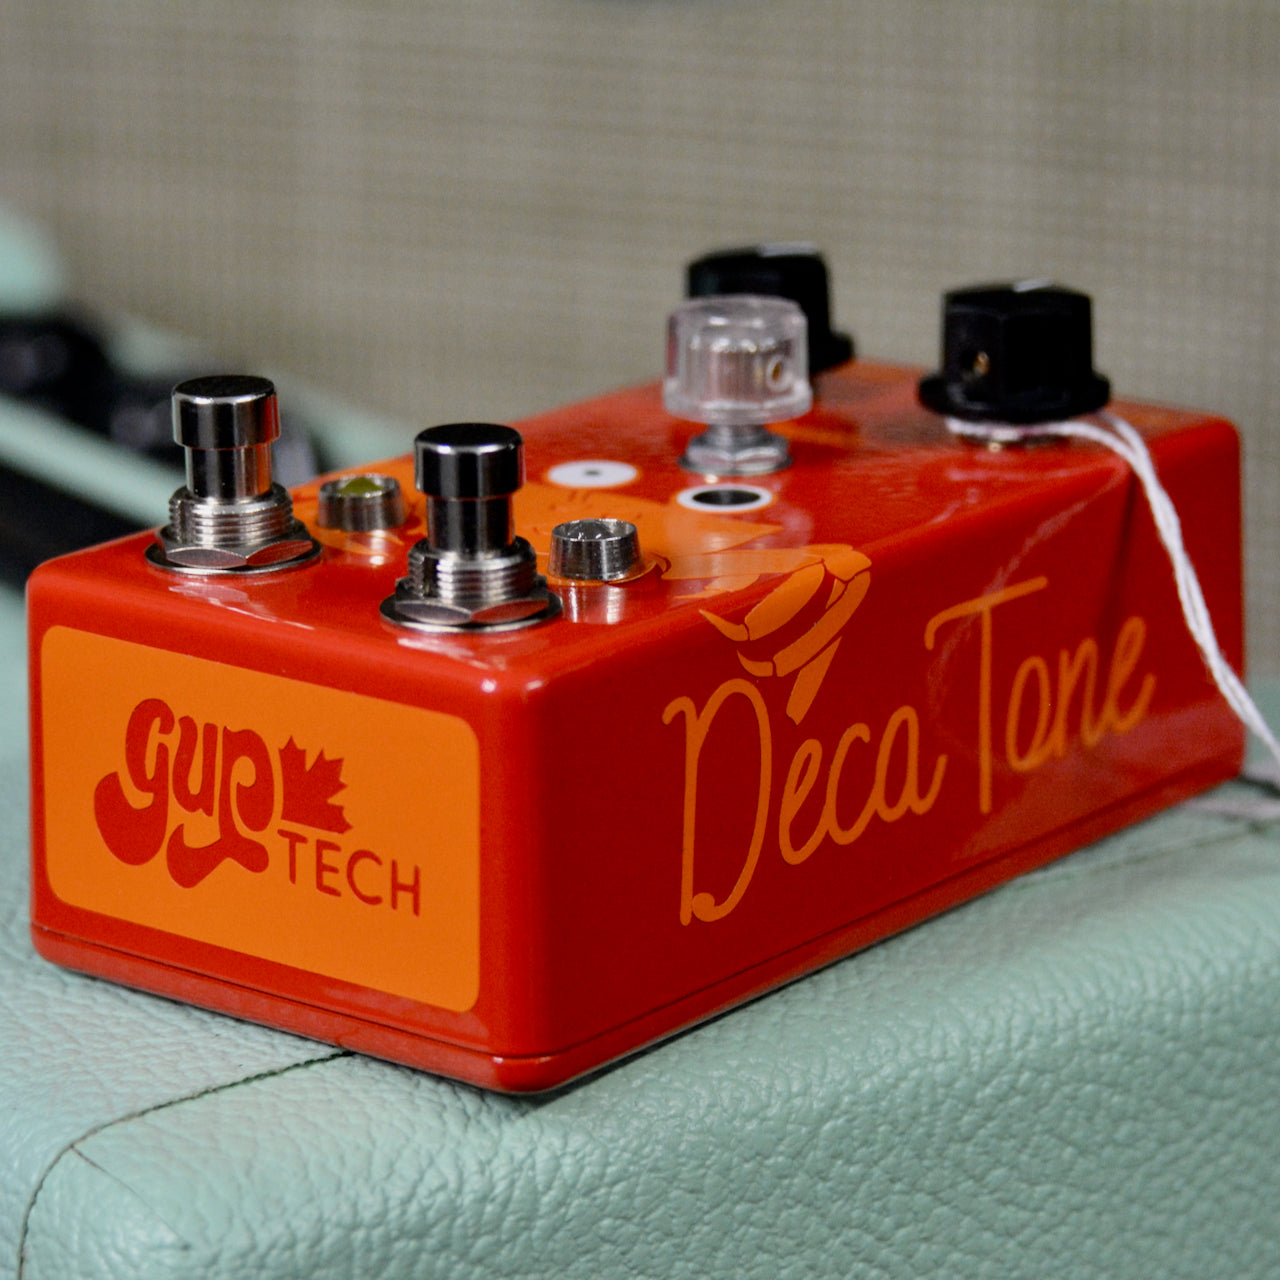 Decatone Fuzz (clone de Tone Machine)